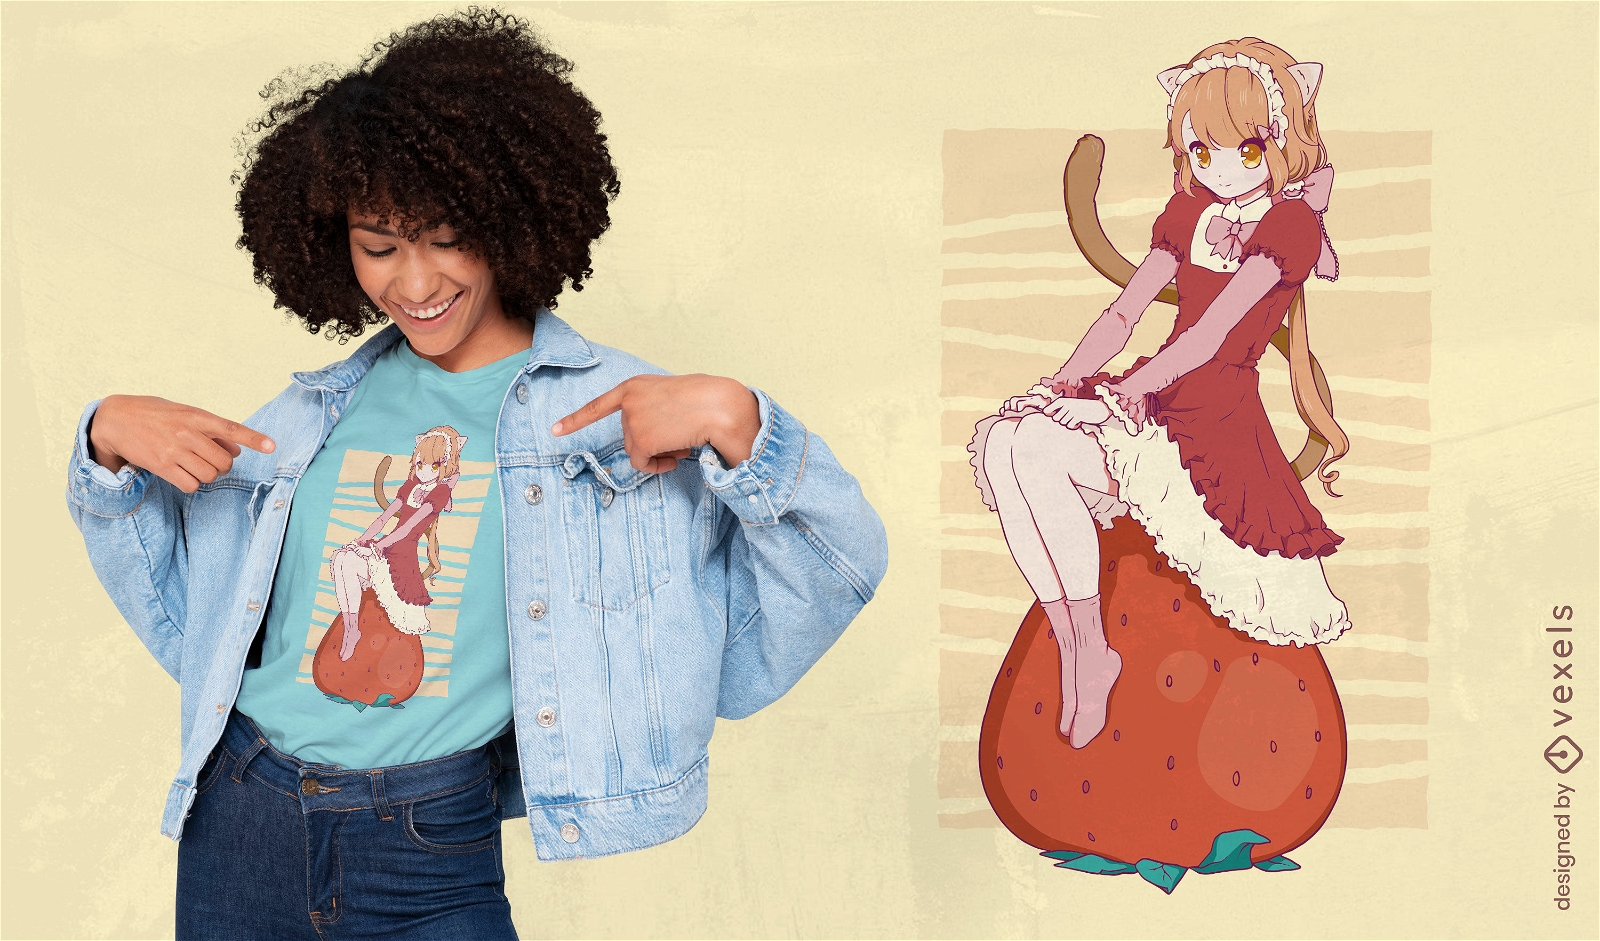 Anime cat girl on strawberry t-shirt design